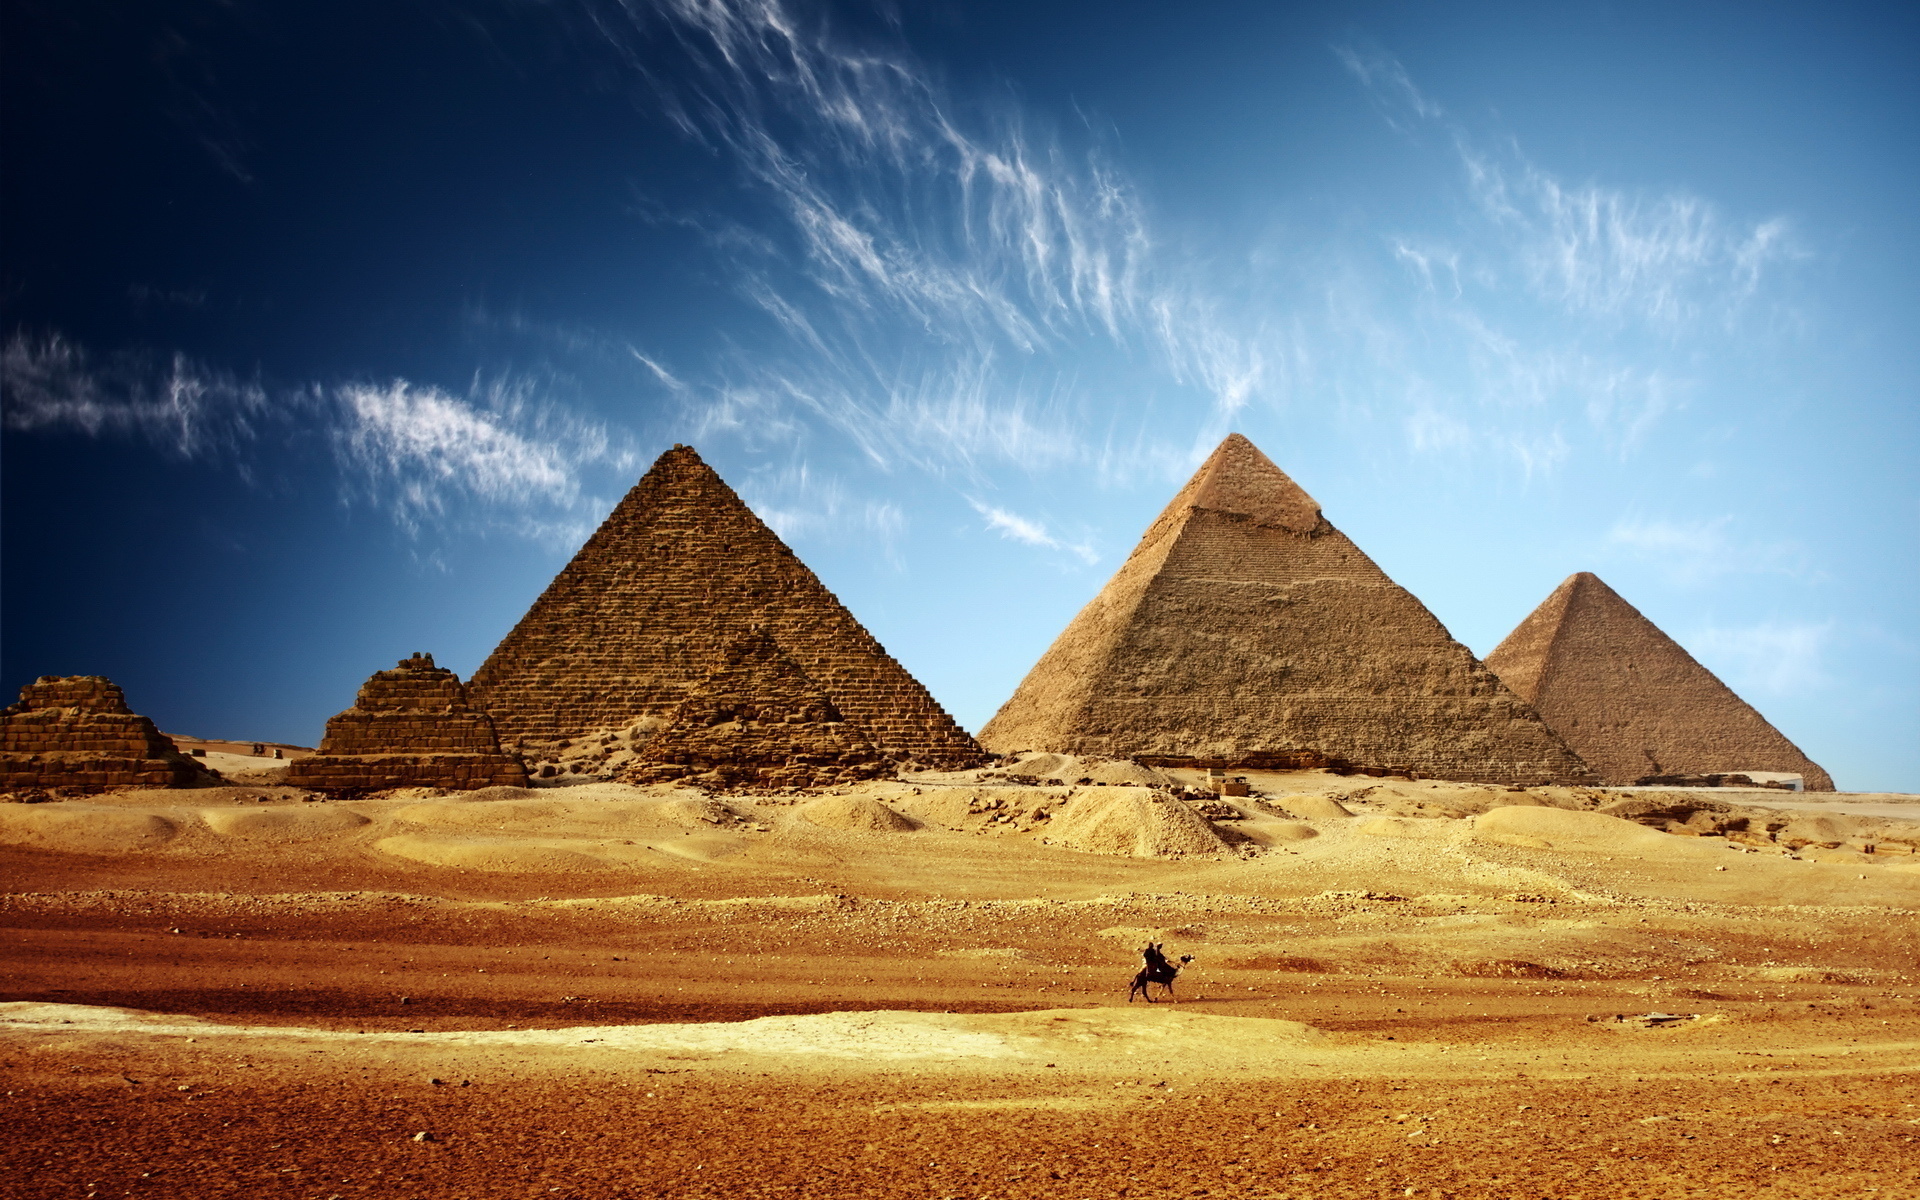 Популярные заставки и фоны Египет на компьютер